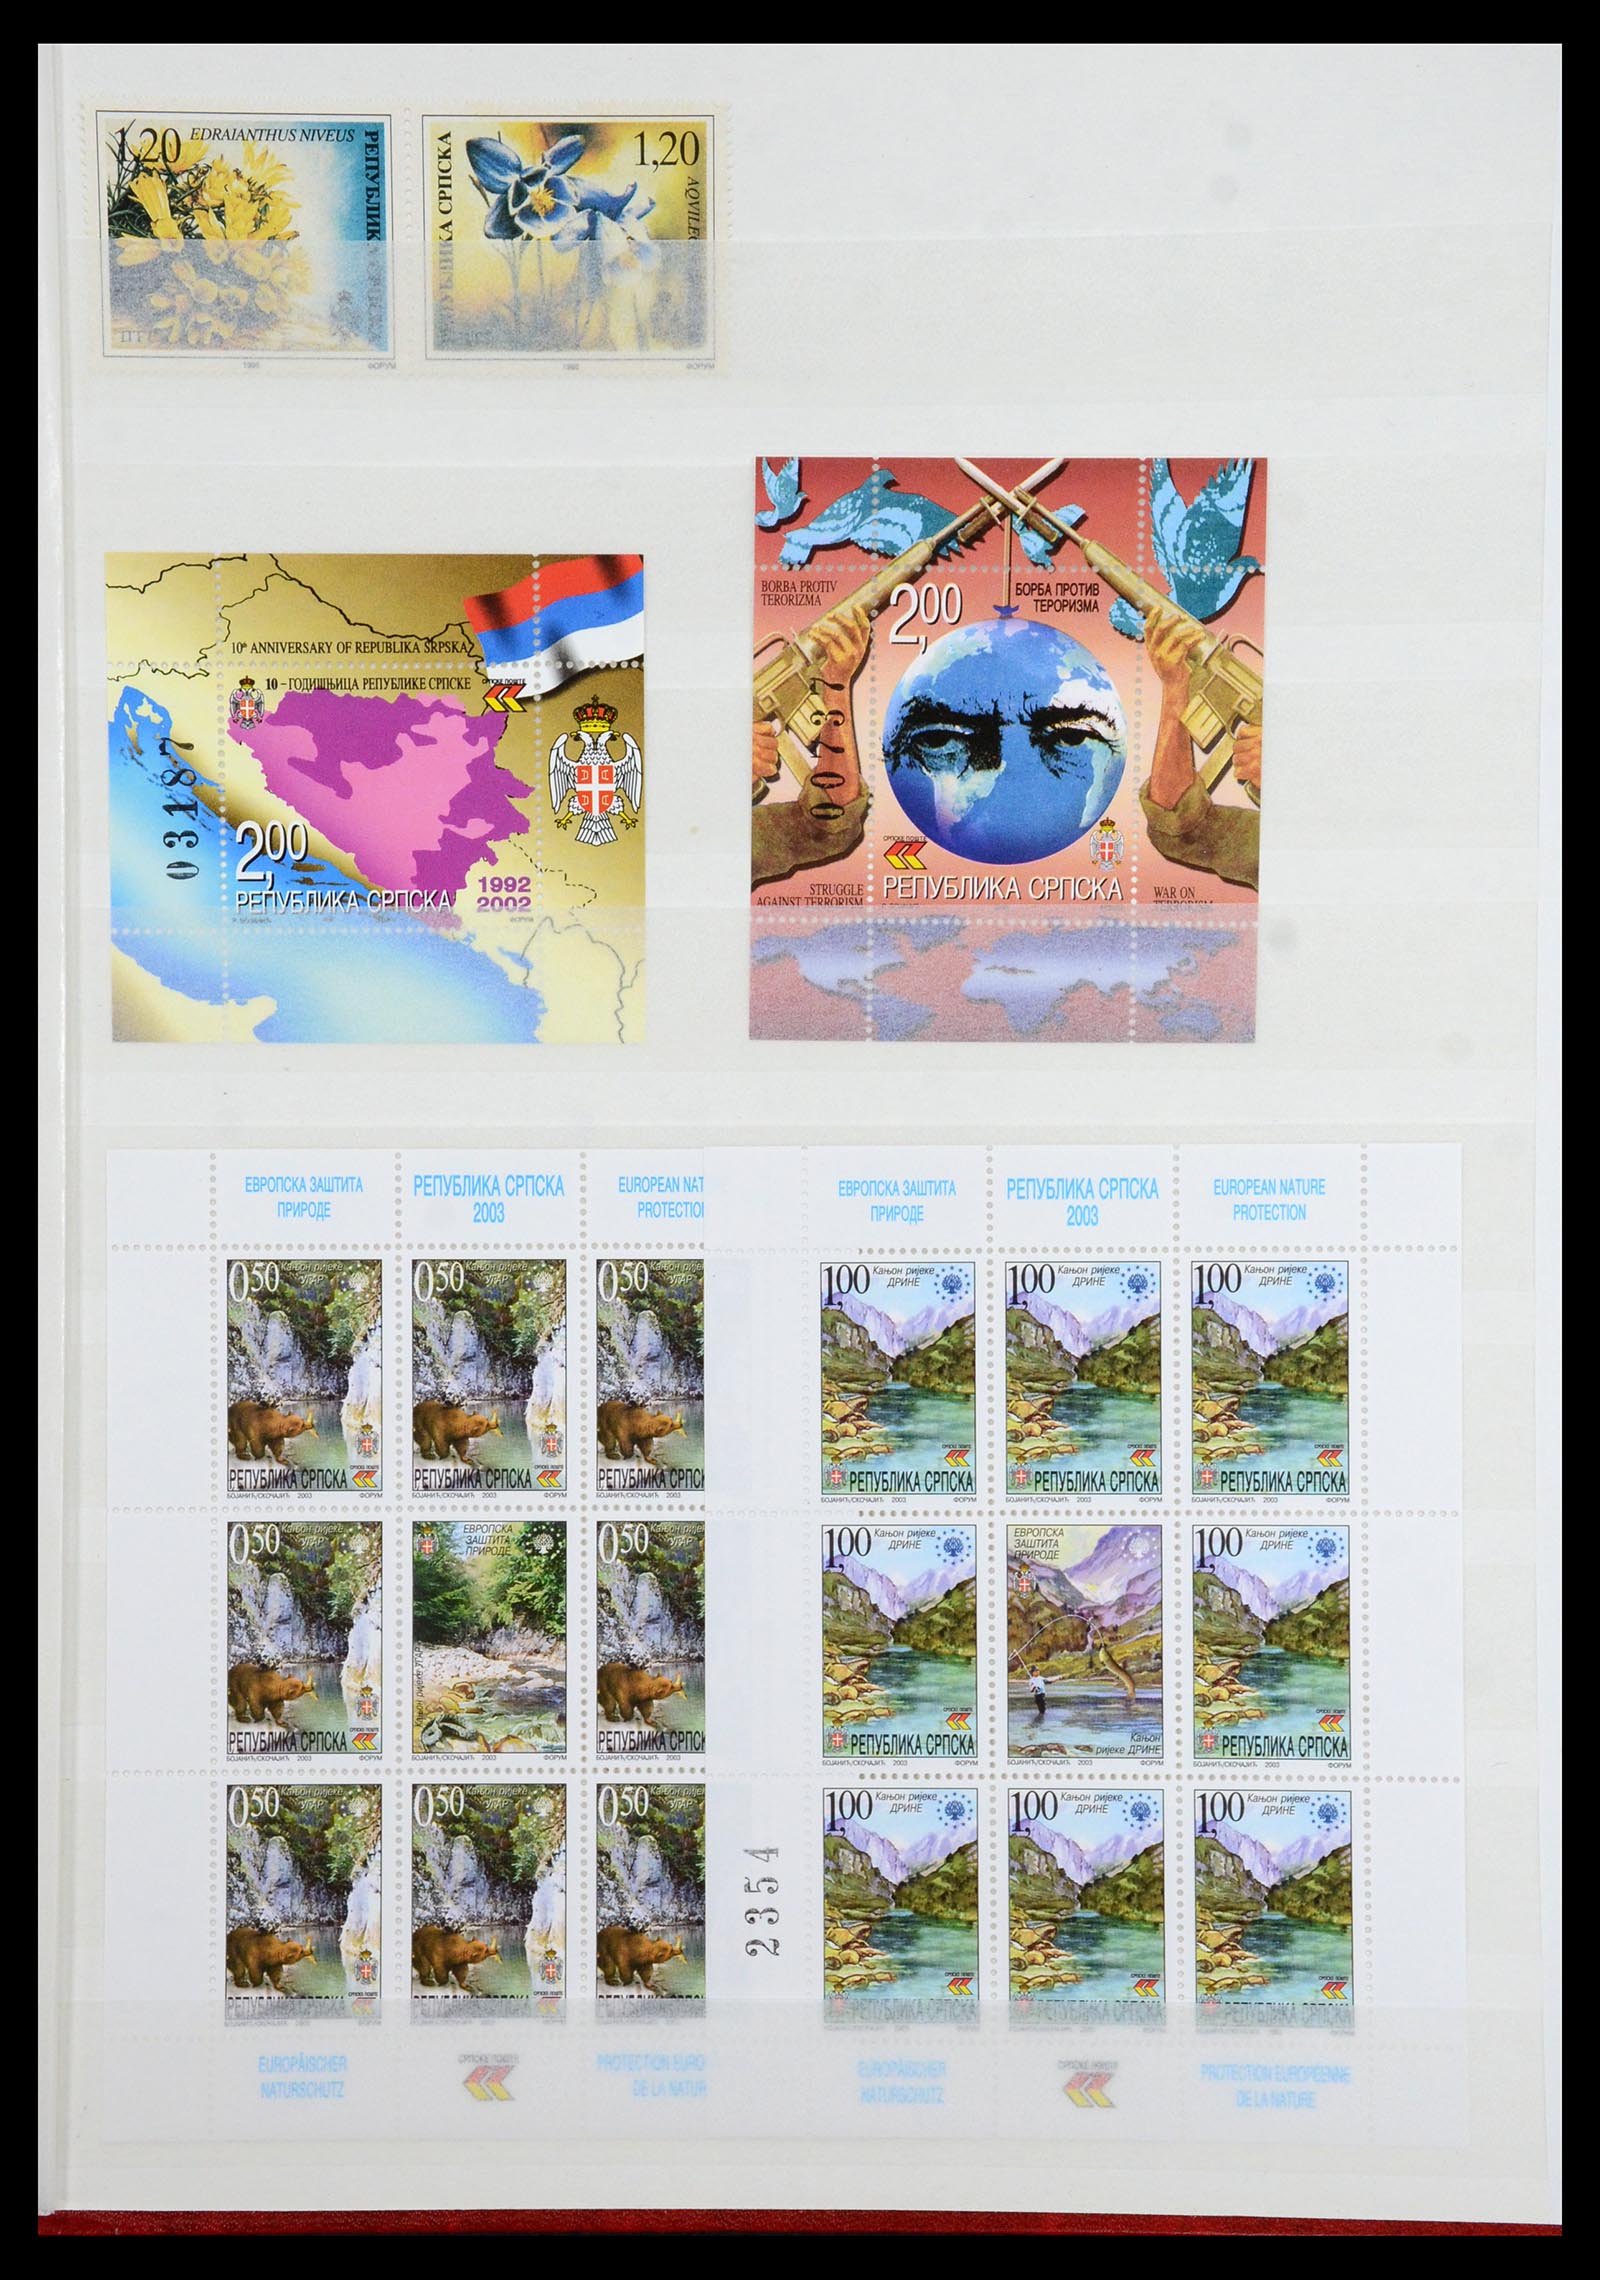 36461 061 - Stamp collection 36461 Slovenia, Croatia and Bosnia-Herzegovina MNH 1991